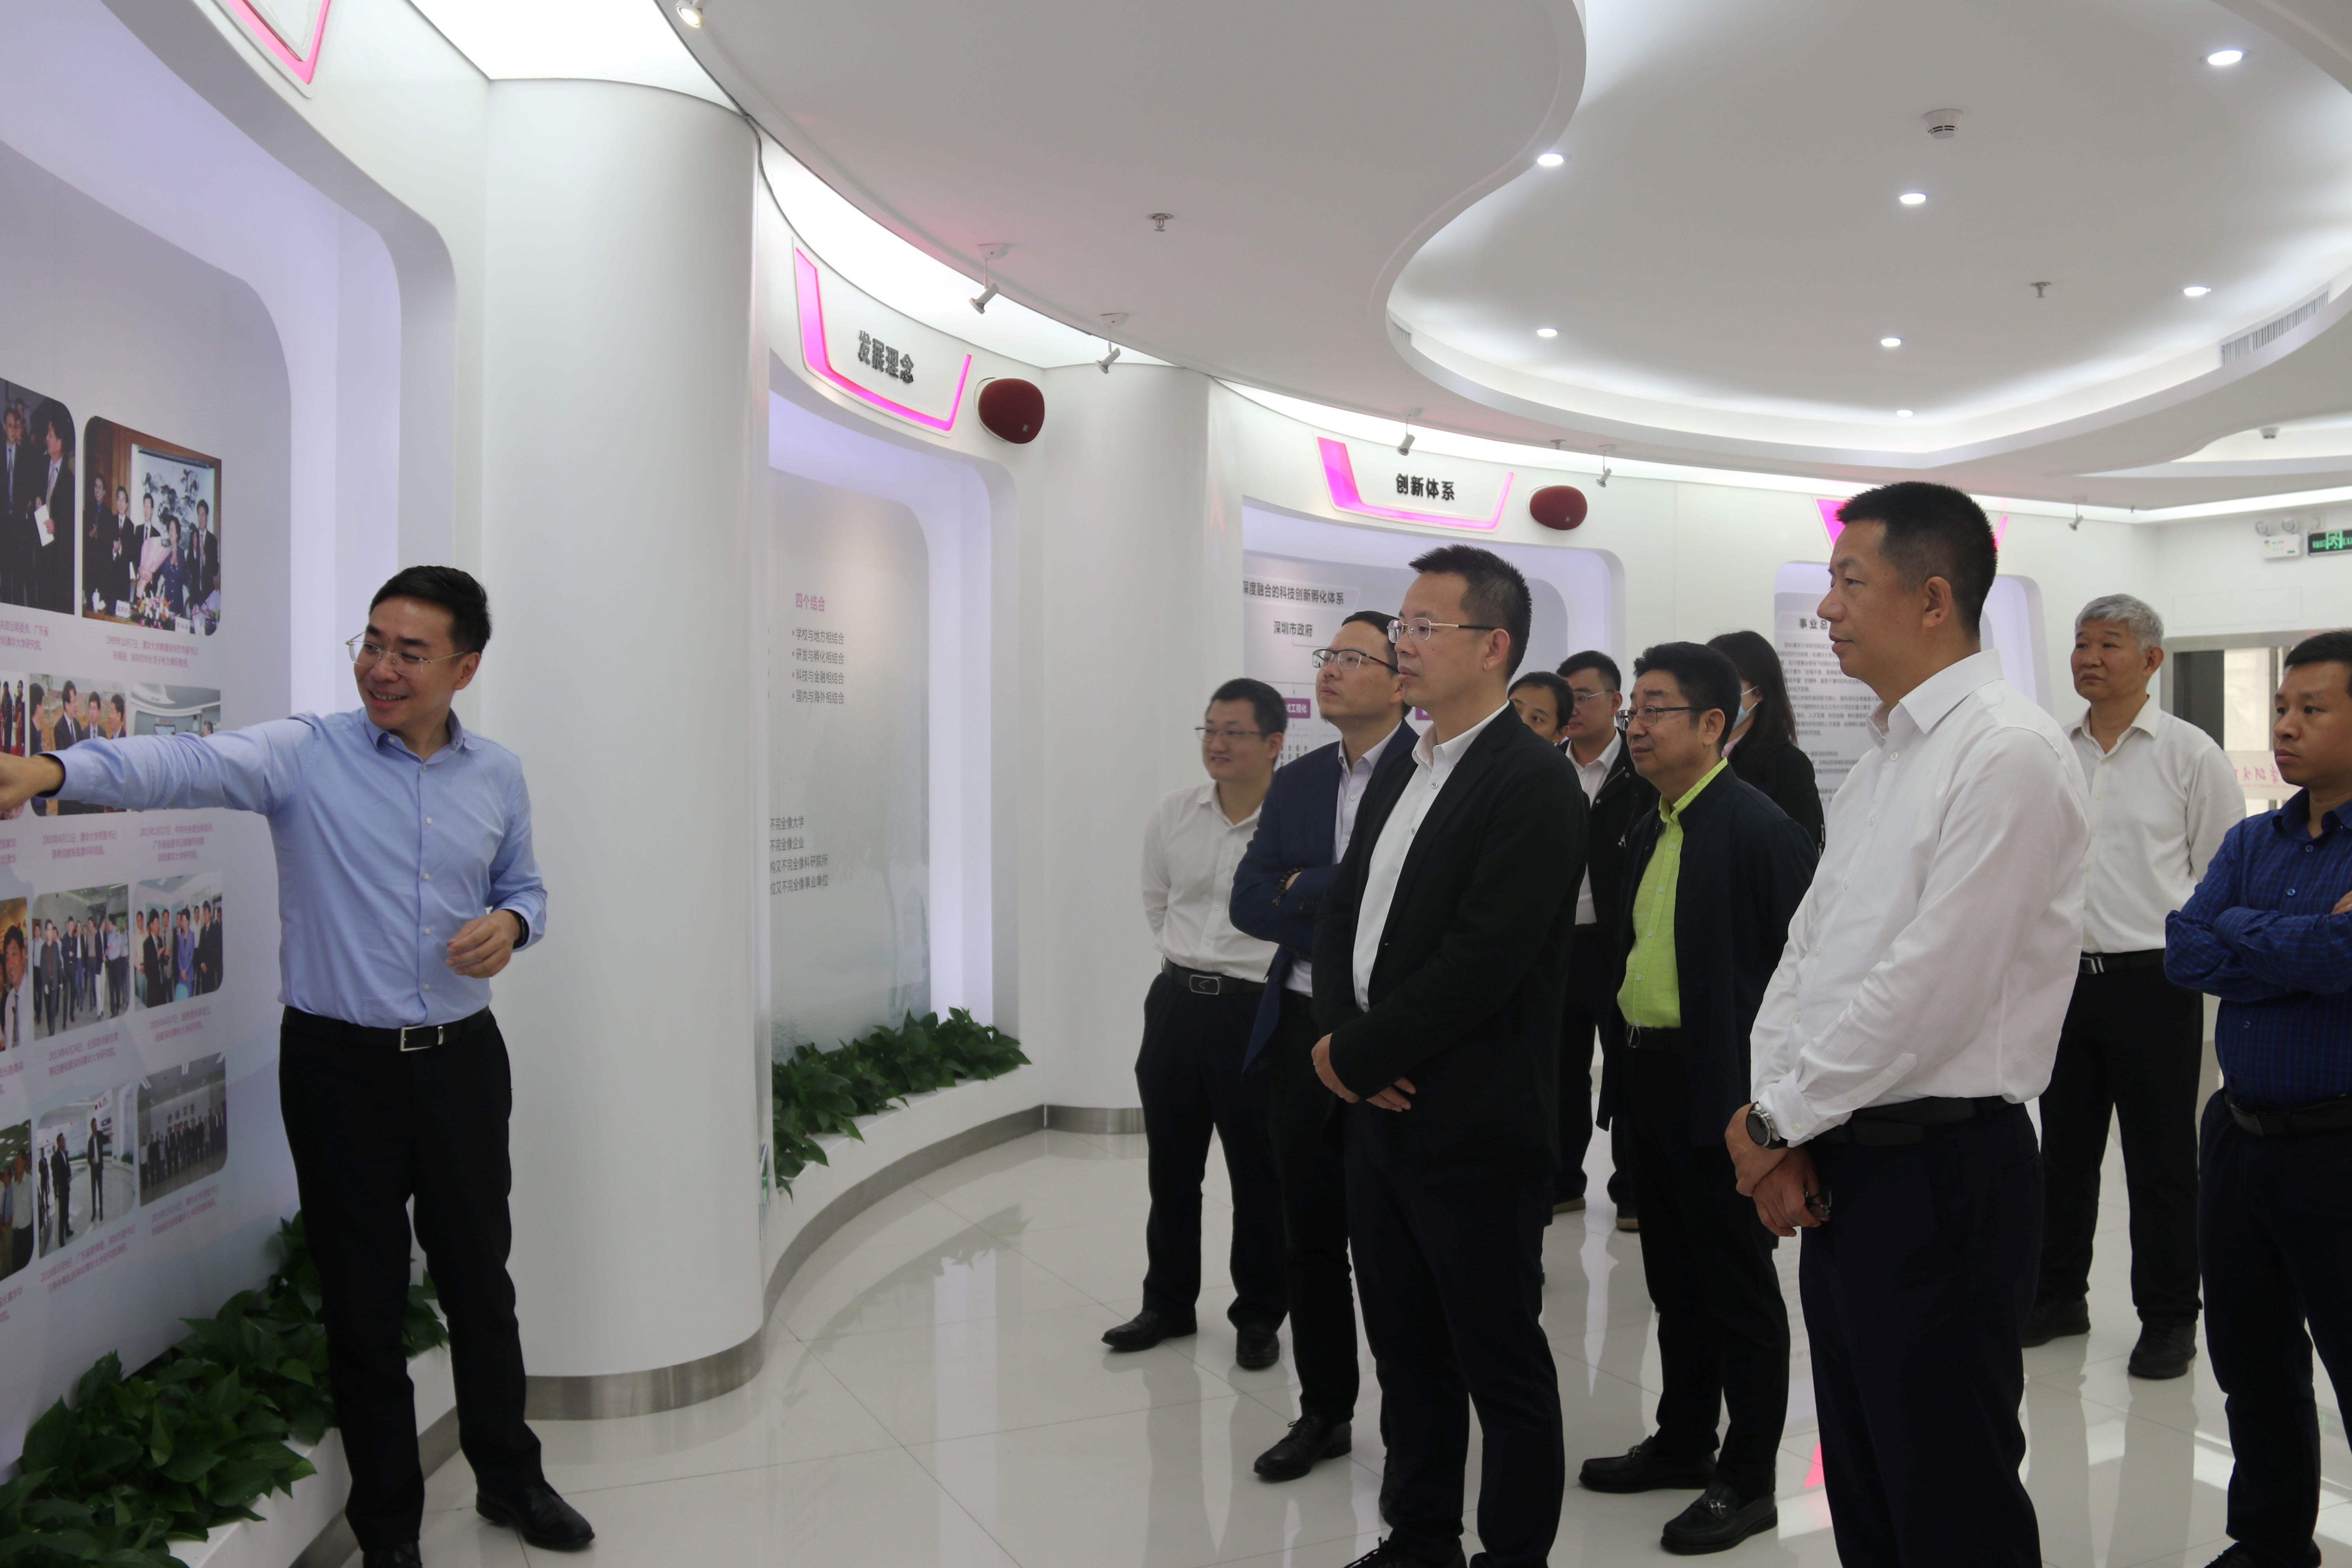 住房和城乡建设部科技与产业化发展中心副主任陈伟一行到访深研院